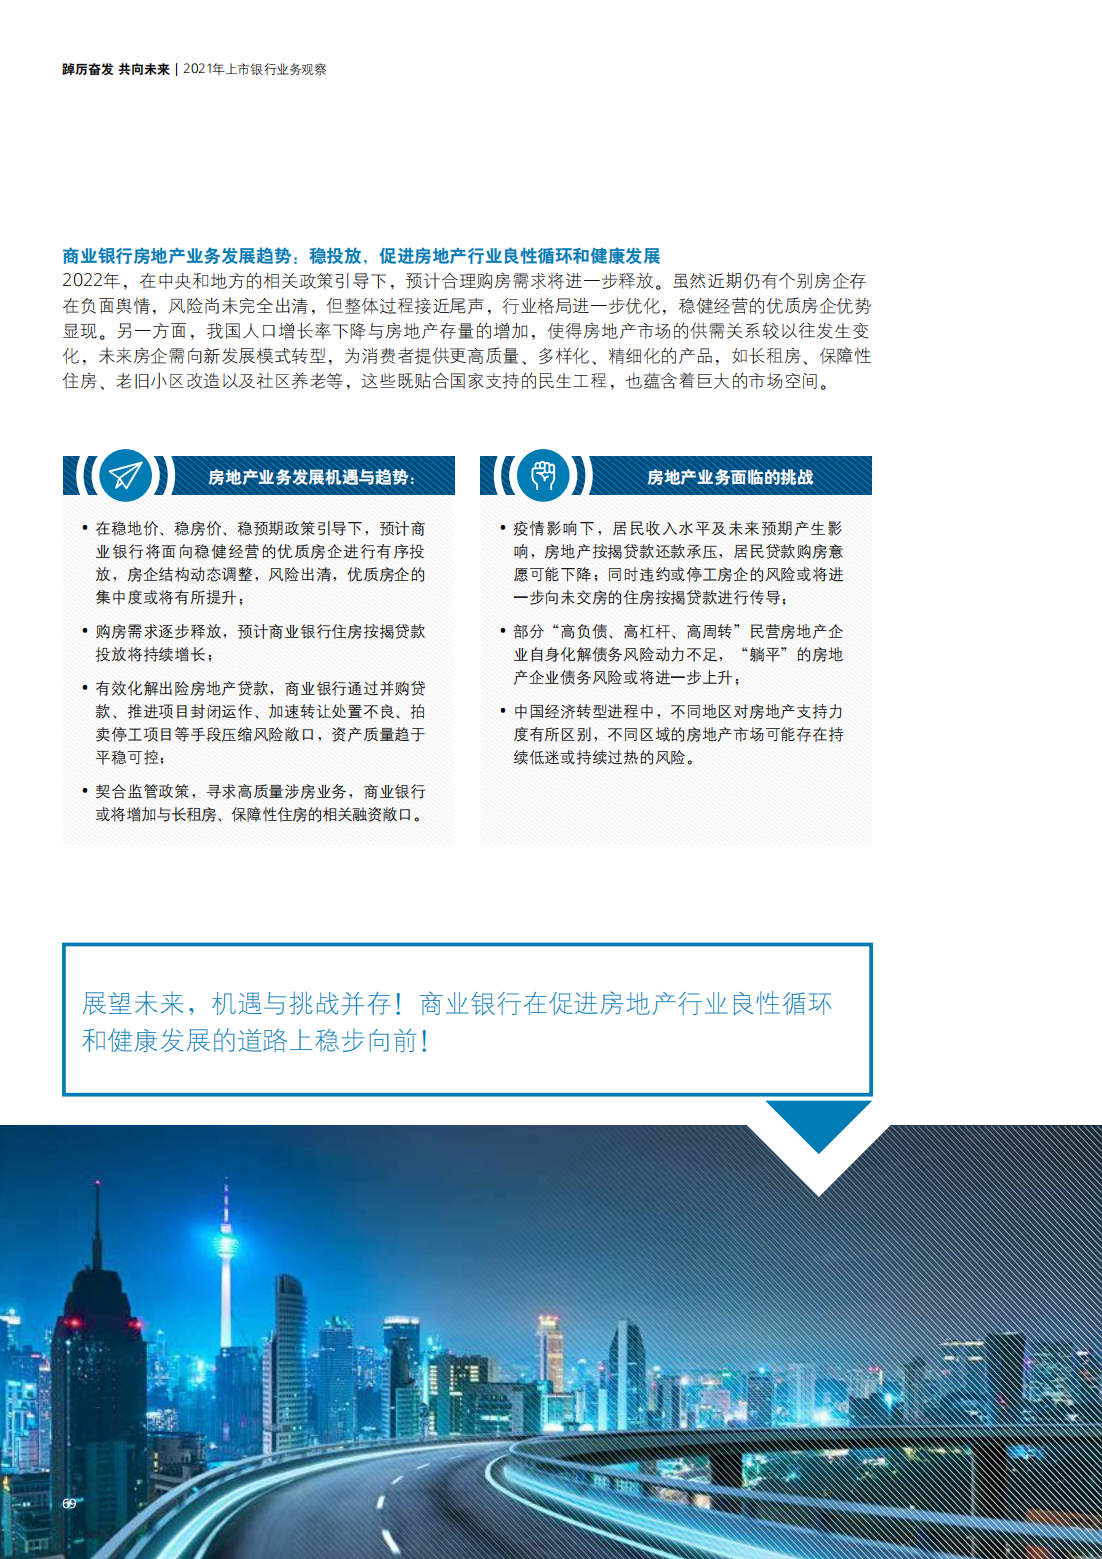 德勤：中国银行业2021年发展回顾及2022年展望（166页完整版）